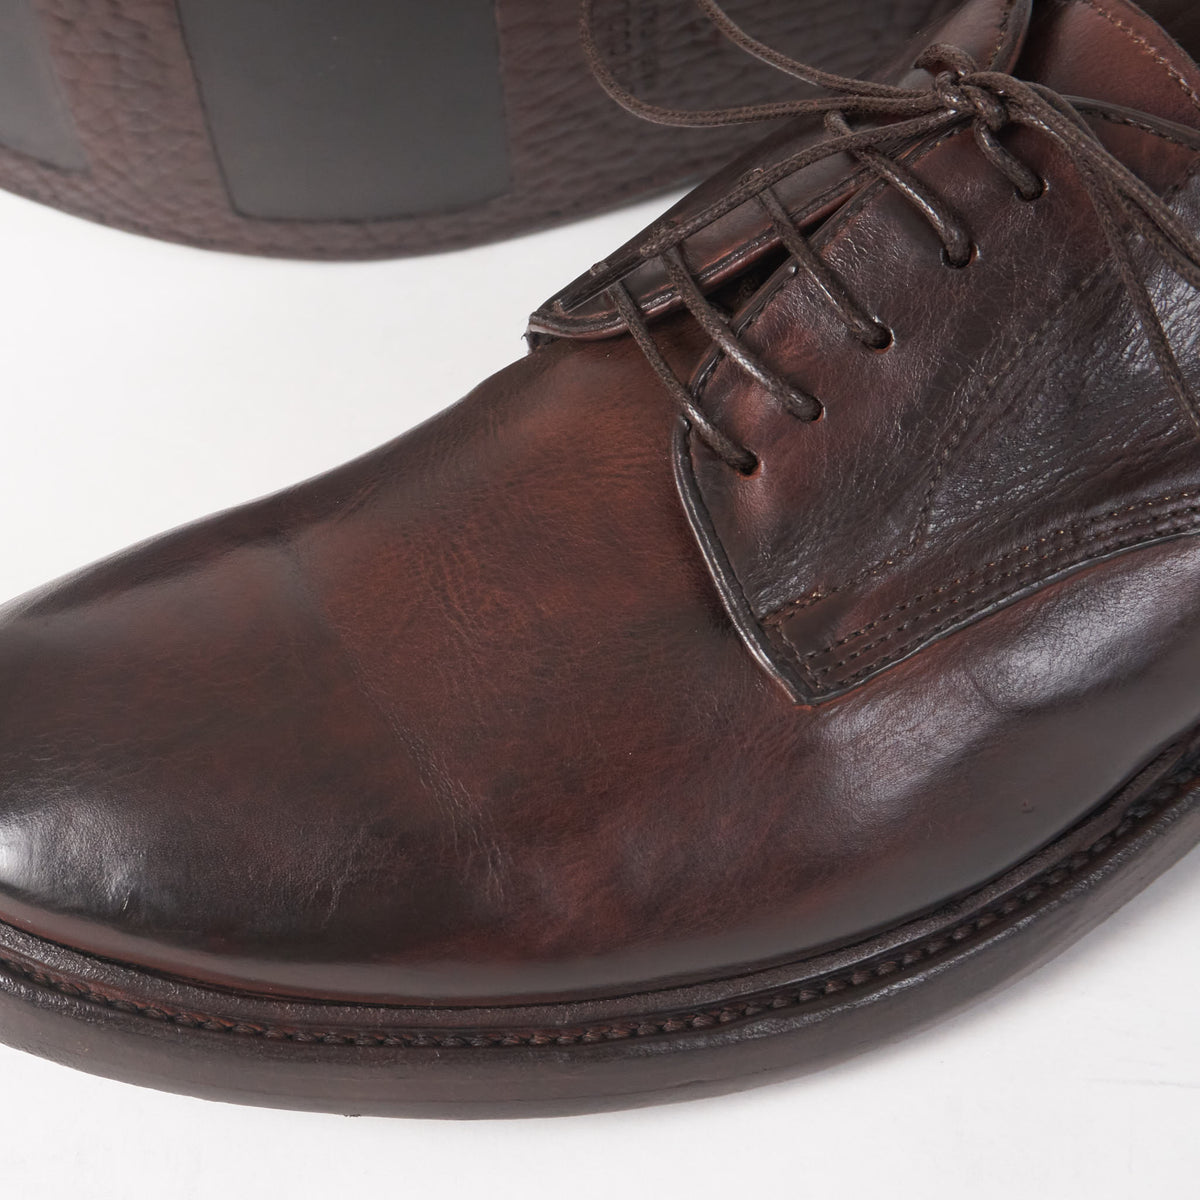 Preventi Classic Hand Made Service Shoe